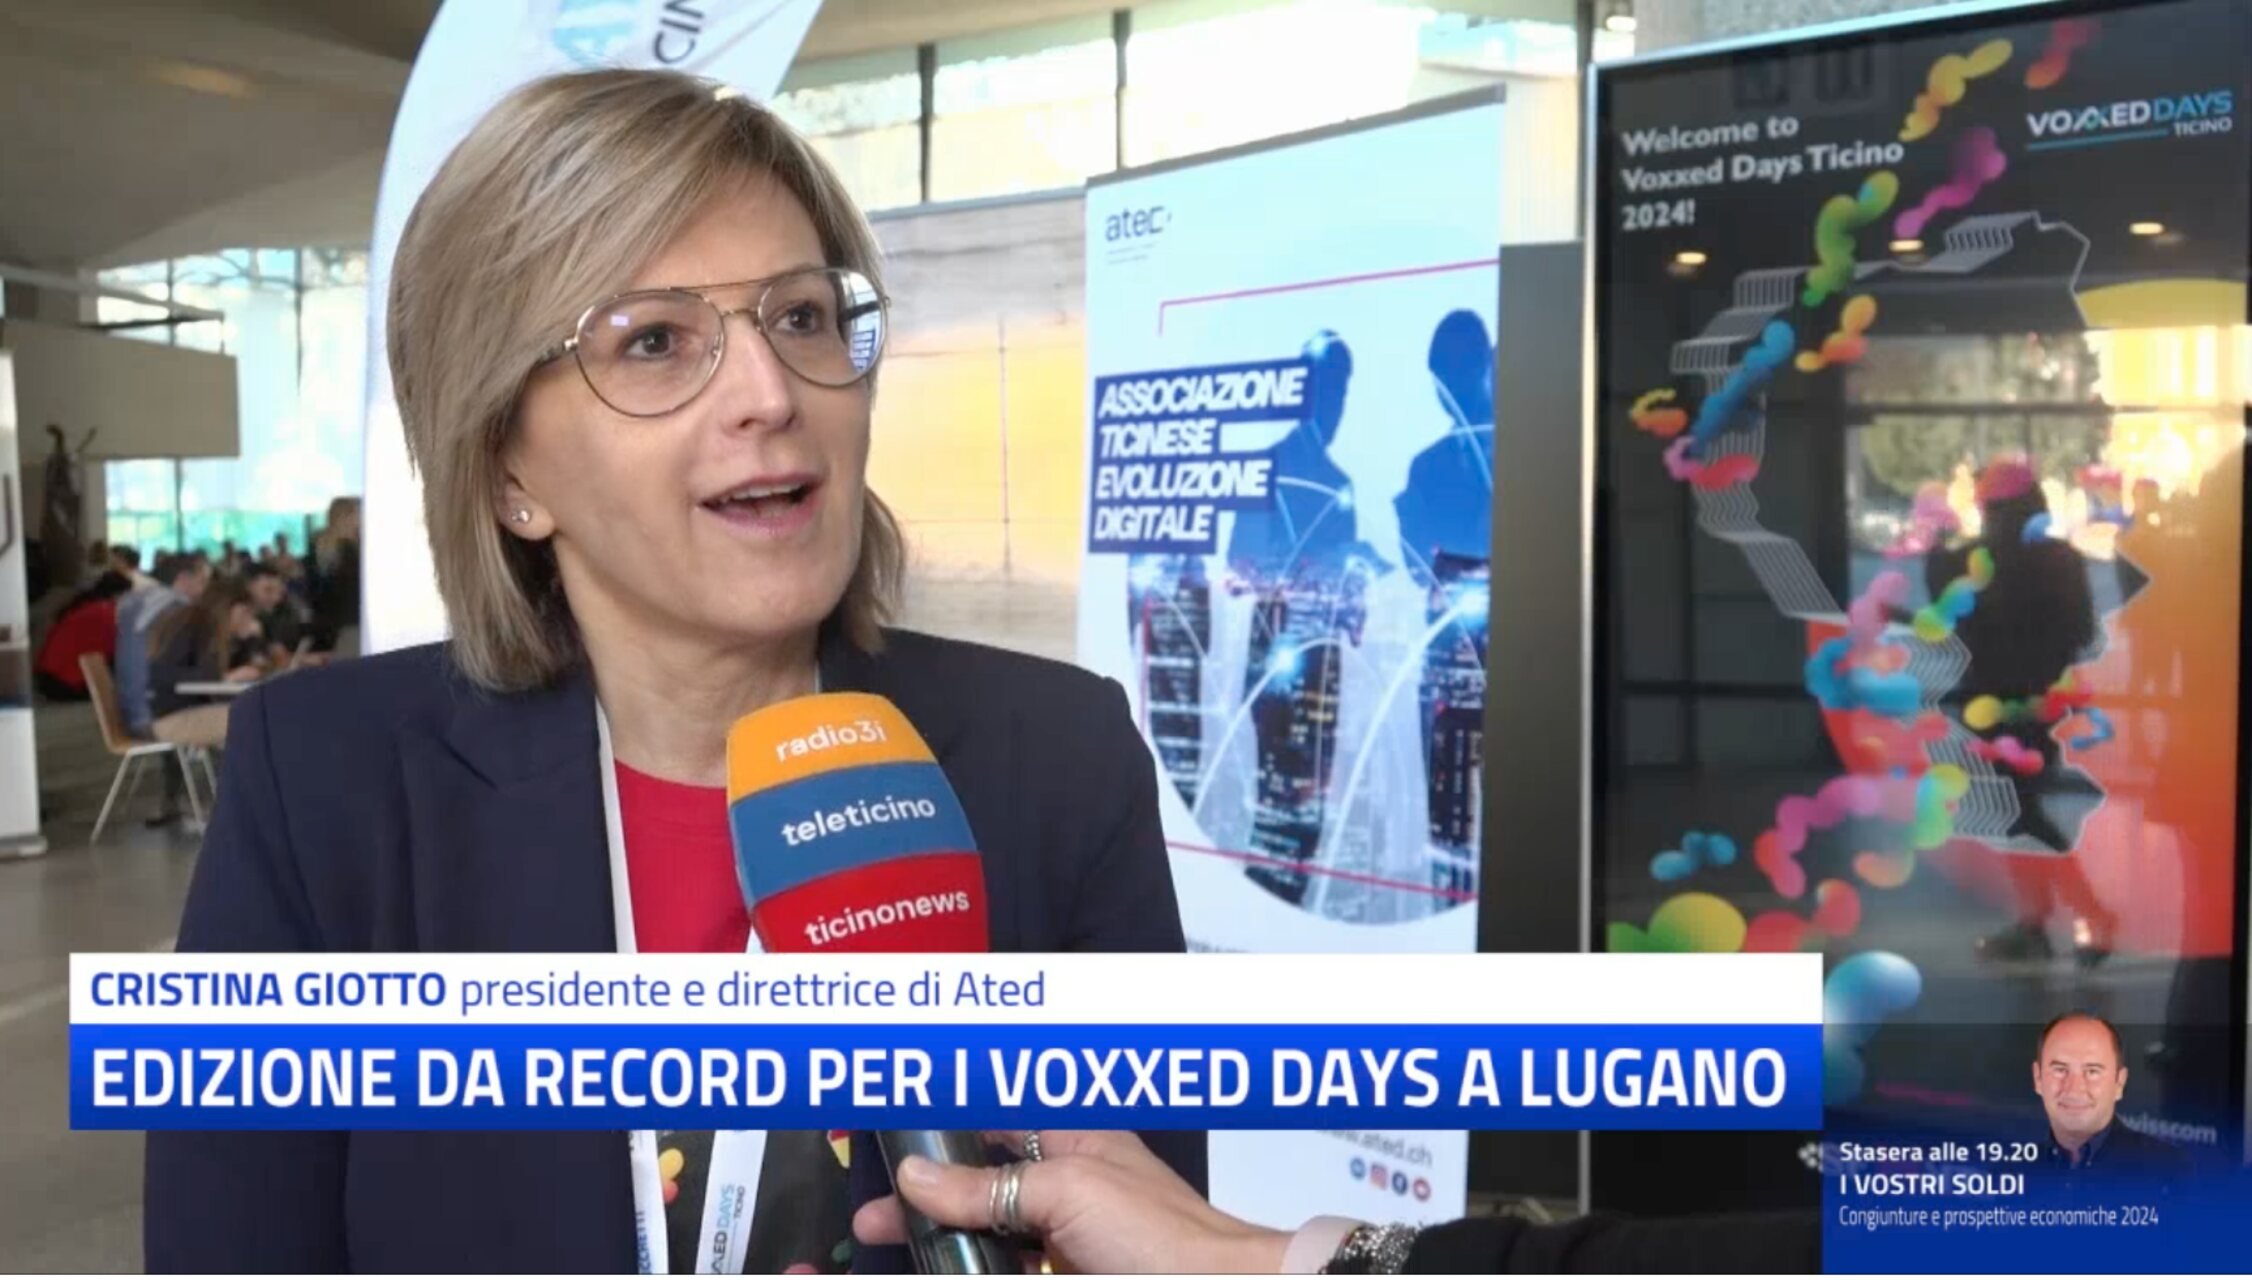 Voxxed Days Ticino: Лугано дахь USI-SUPSI Зүүн кампус дахь 2024 оны хэвлэлд долоон өөр орны 400 оролцогч, илтгэгч оролцов.